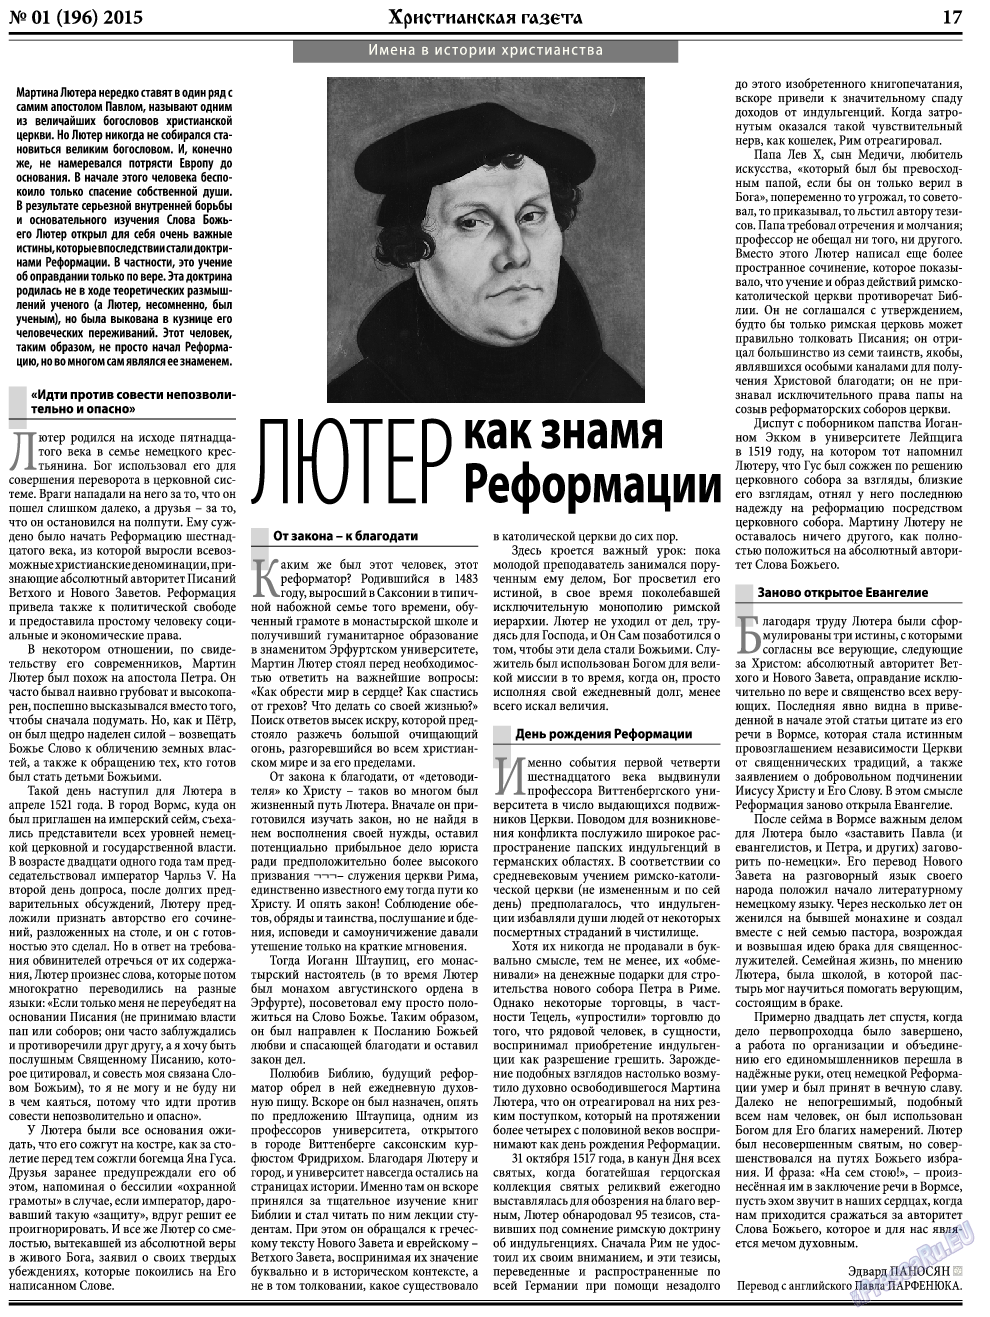 Христианская газета, газета. 2015 №1 стр.25